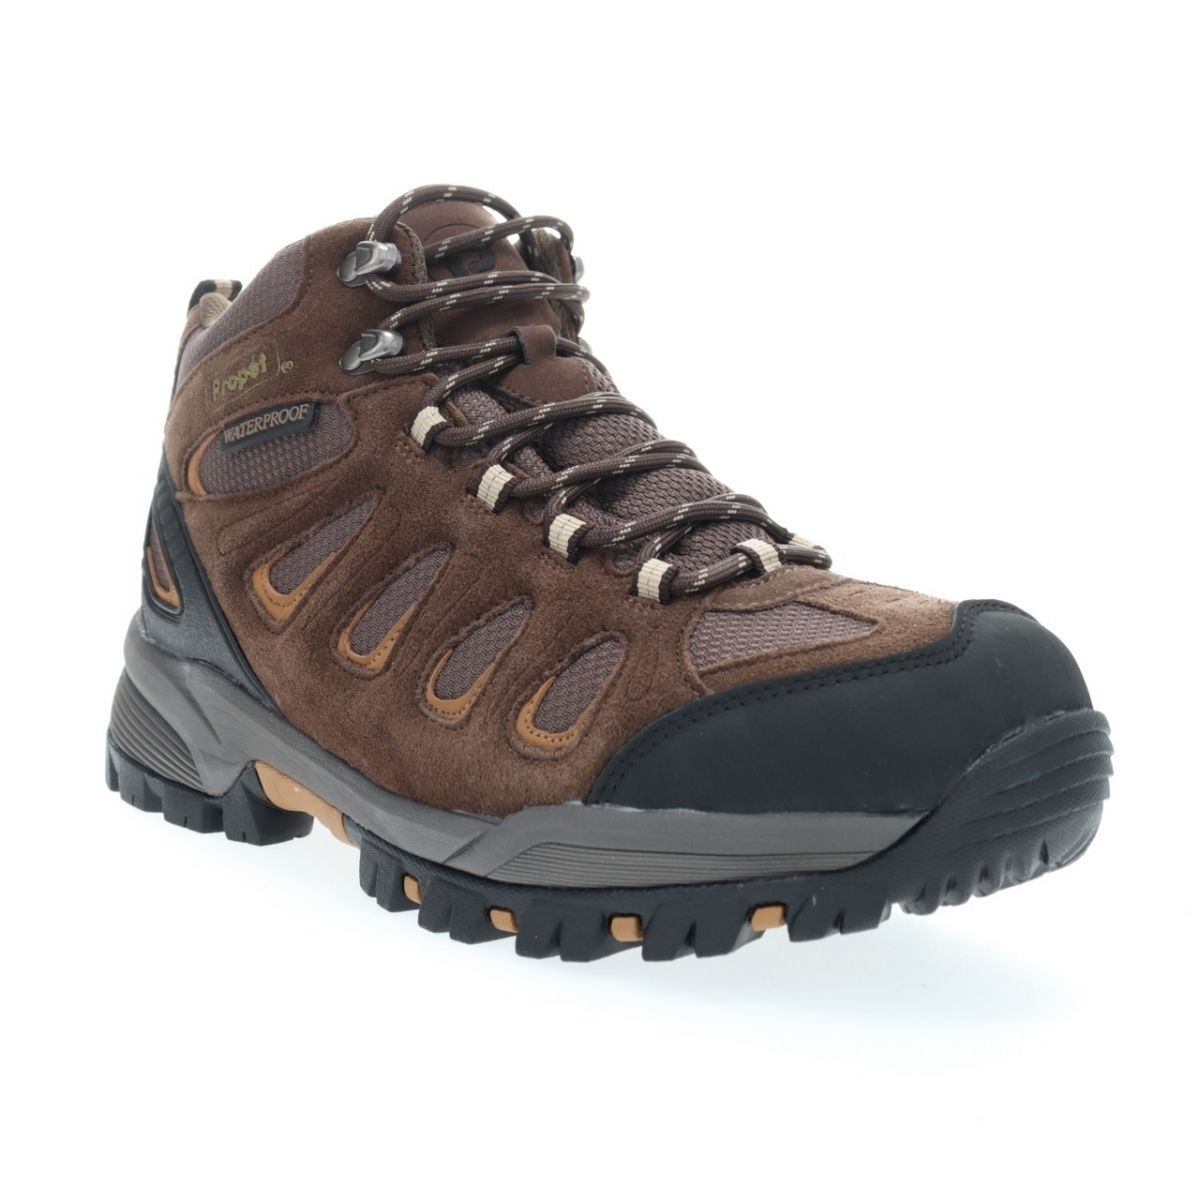 Propet Men's Ridge Walker Hiking Boot Brown - M3599BR 8 XX US Men BROWN - BROWN, 12 XX-Wide